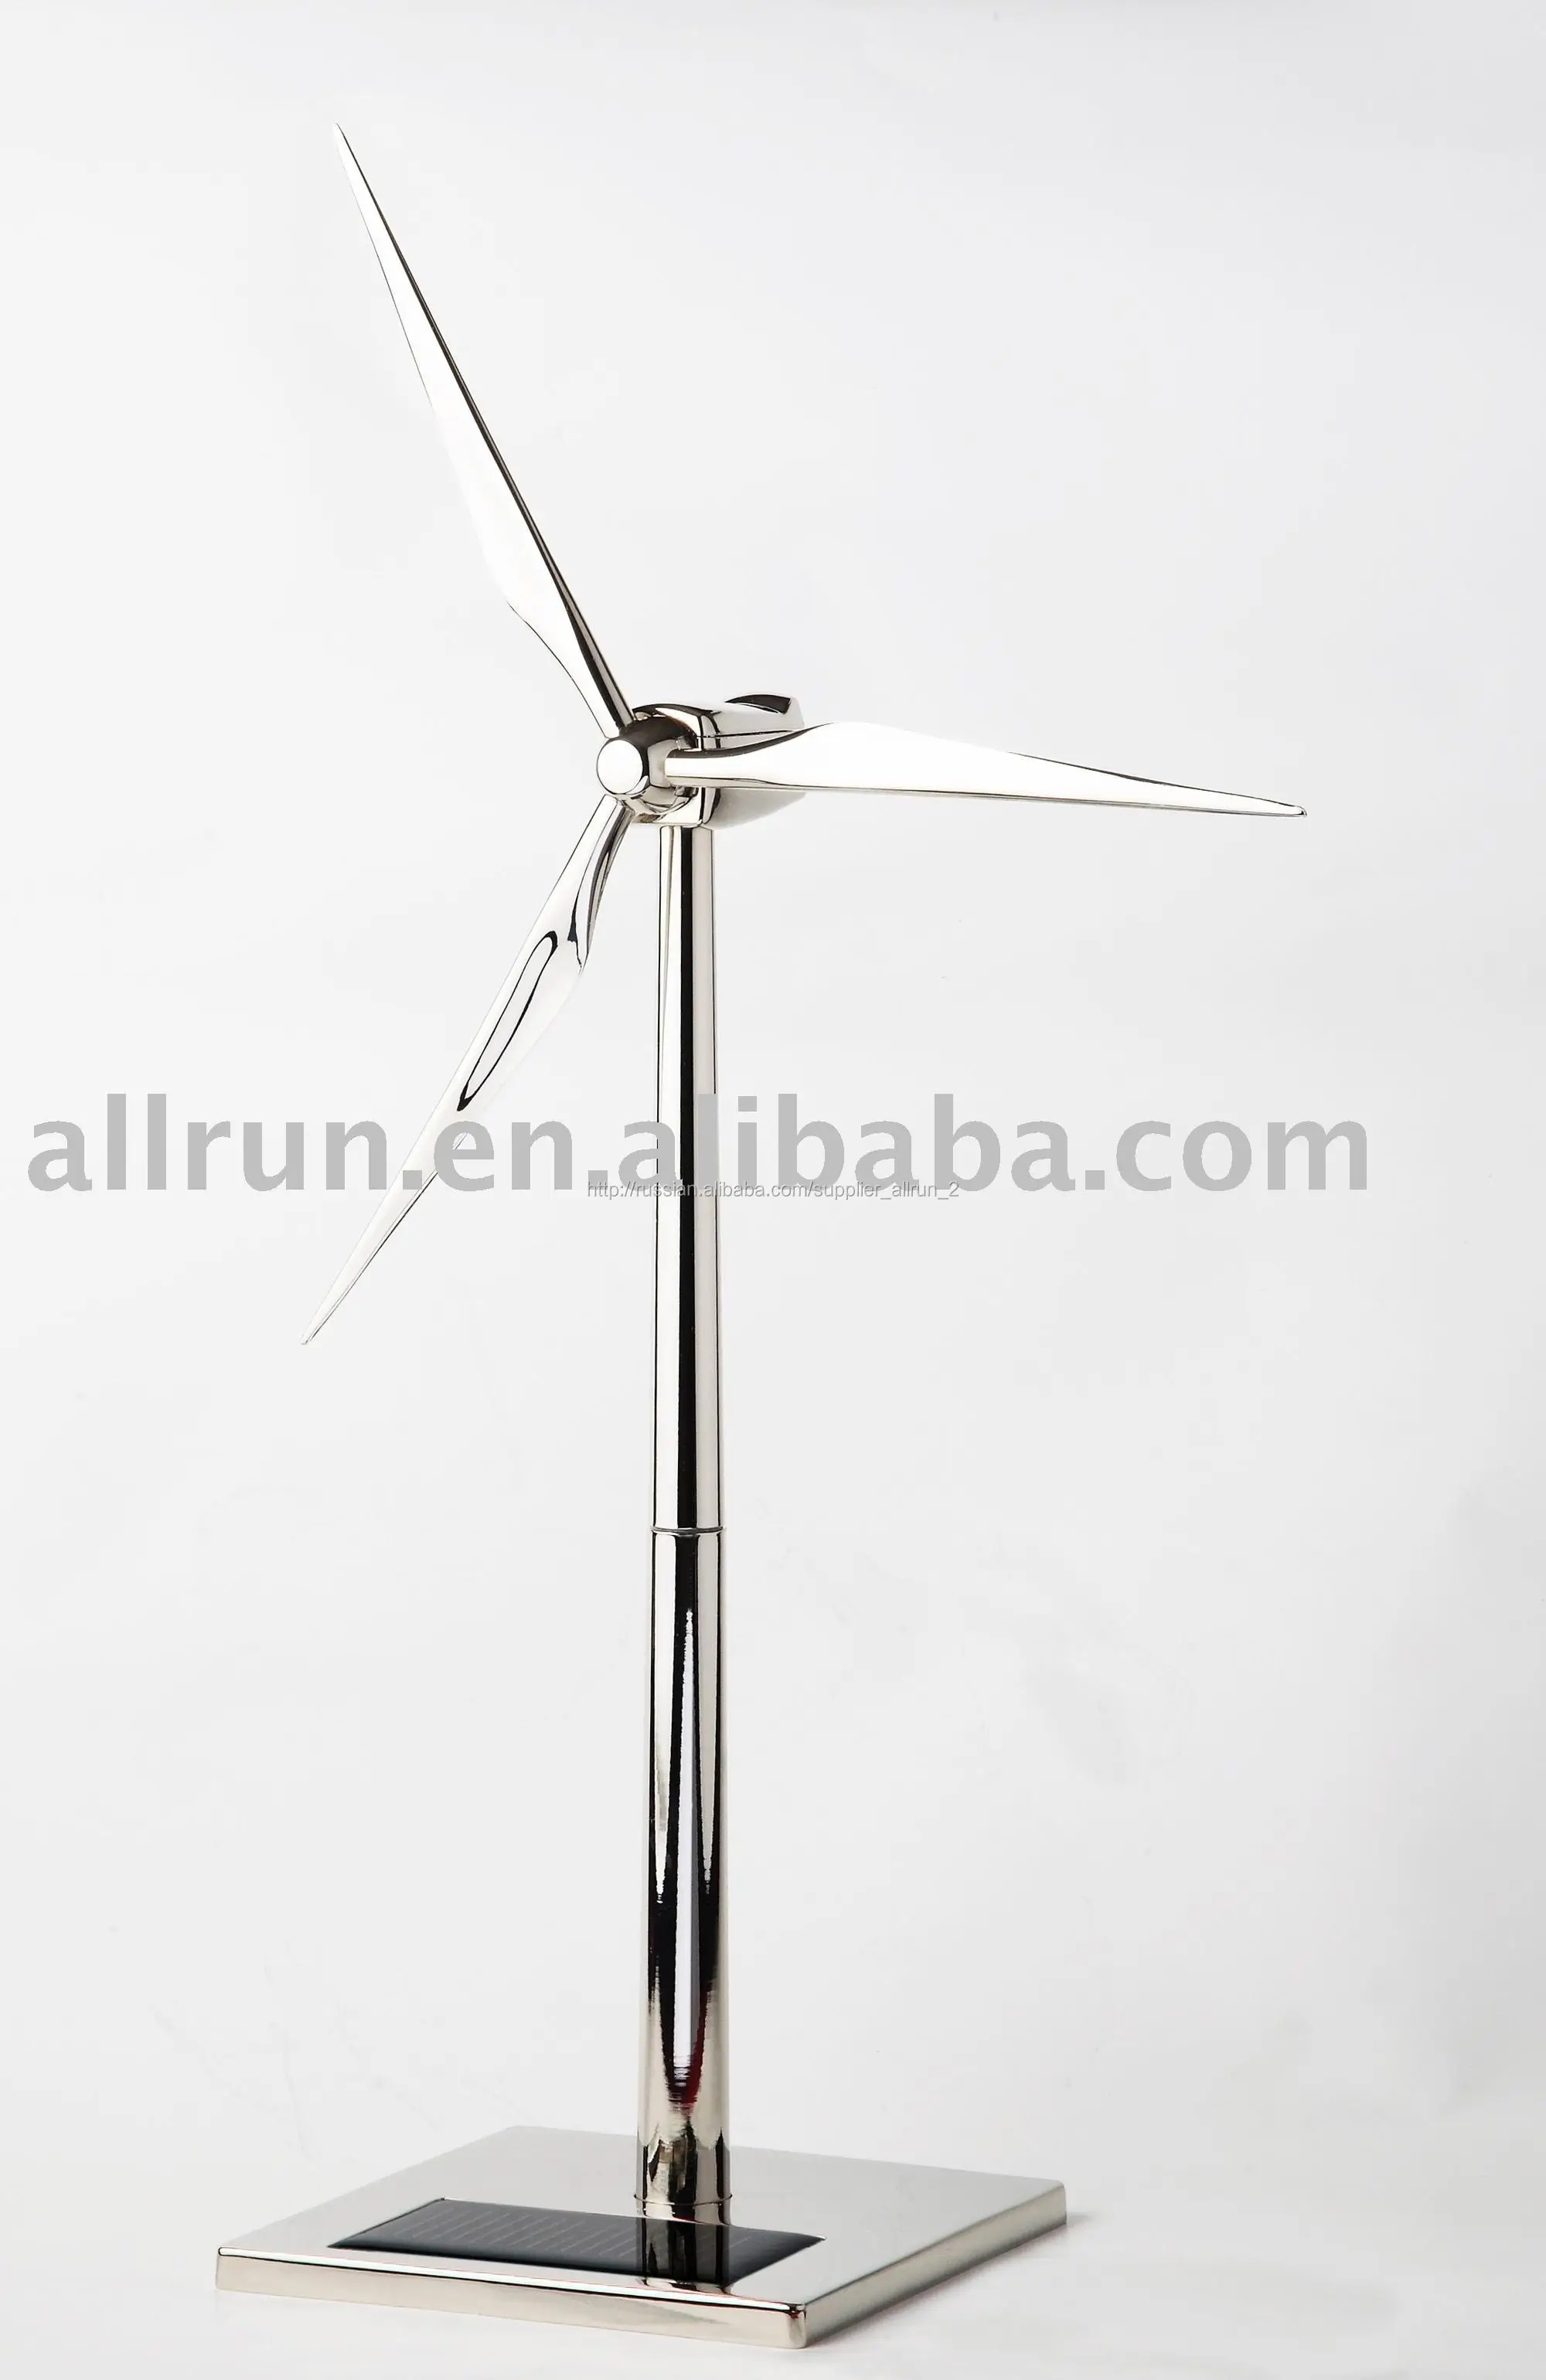 алюминиевый сплав wind турбины модели солнечные игрушки